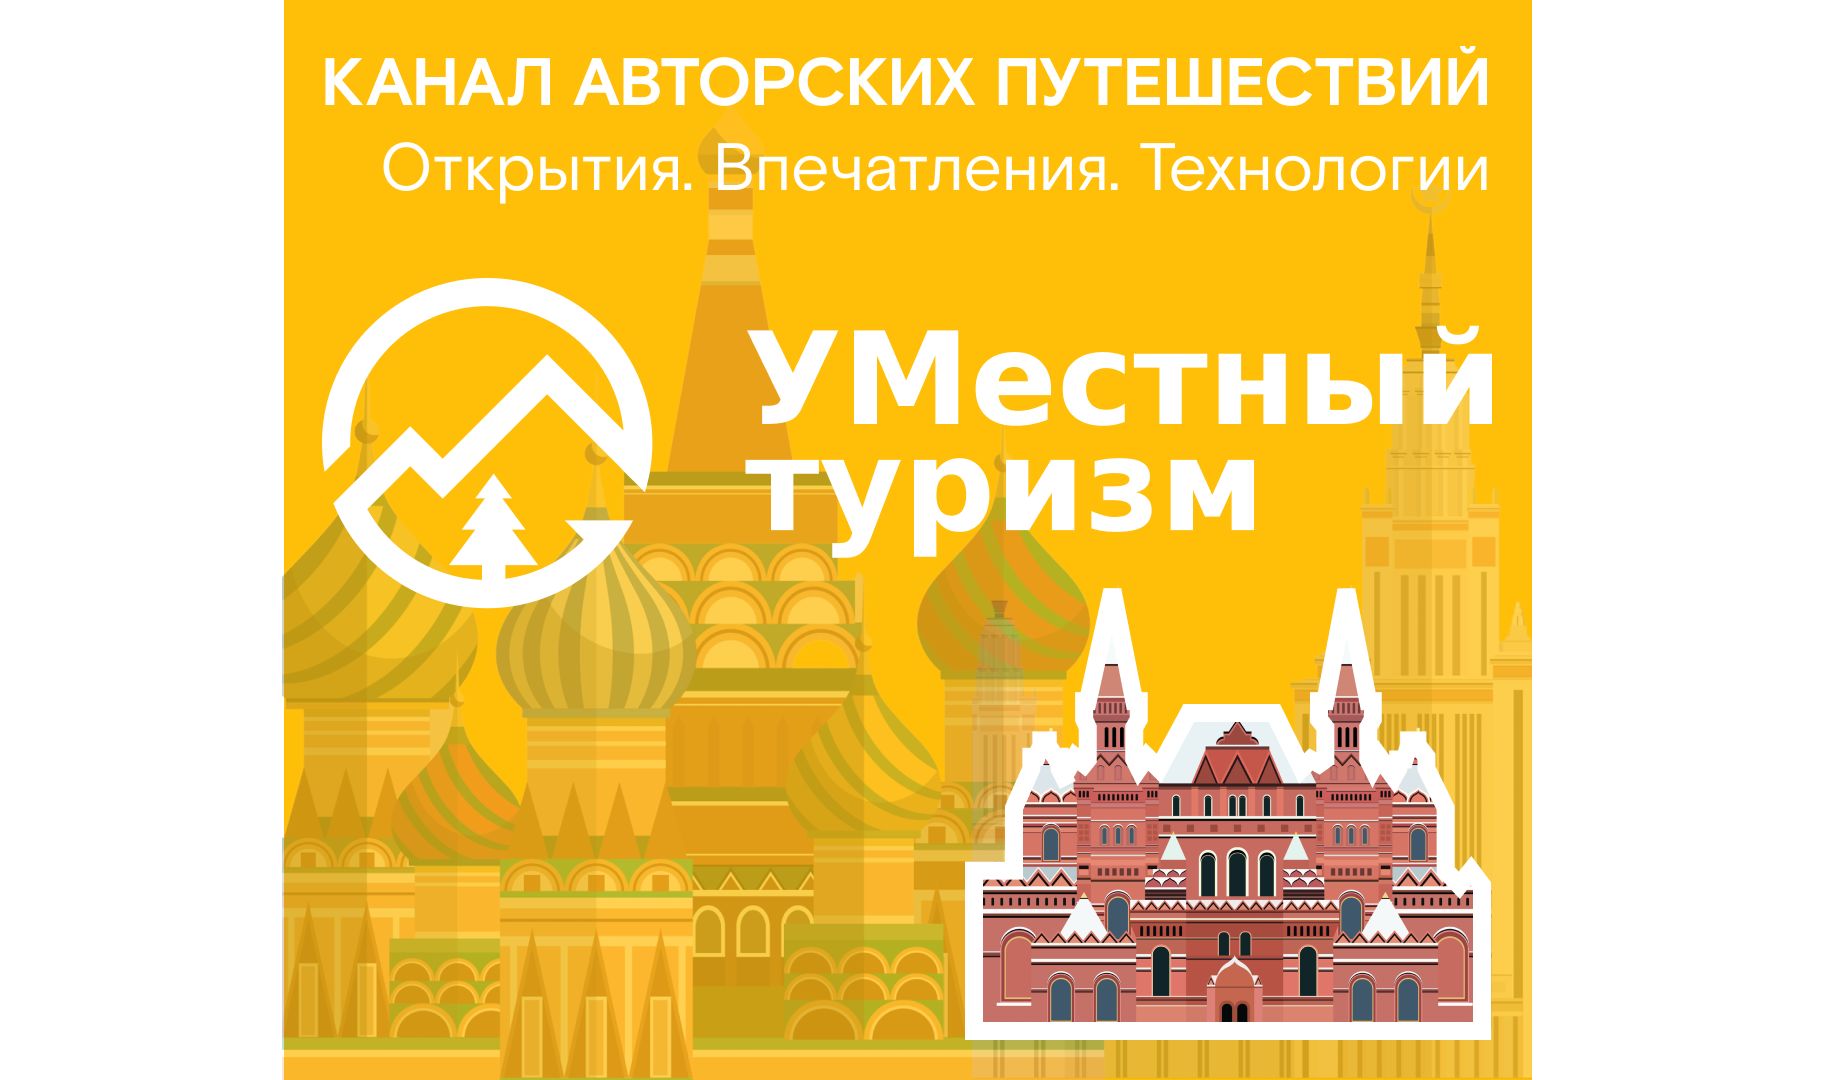 Путешествия и технологии: ярославцы могут узнать об интересных туристических маршрутах на новом telegram-канале